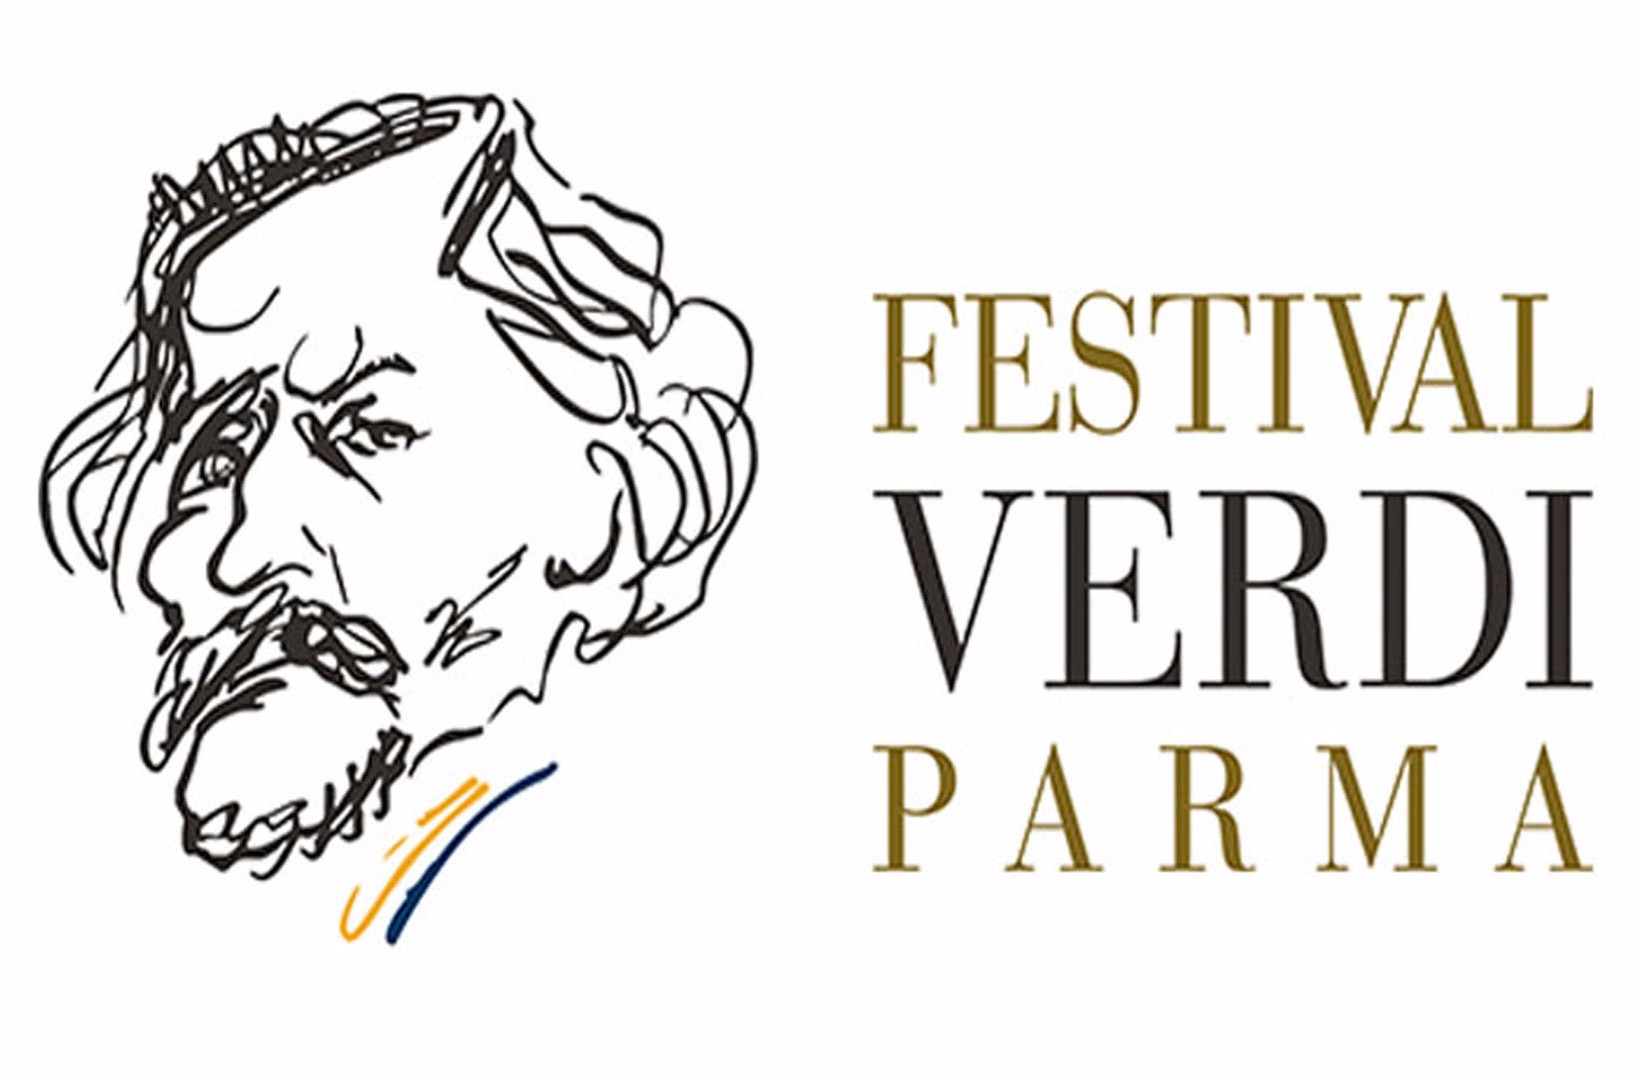 Hotel Festival Verdi Parma 2019 Camere spaziose Relax e Benessere Hotel Campus Collecchio